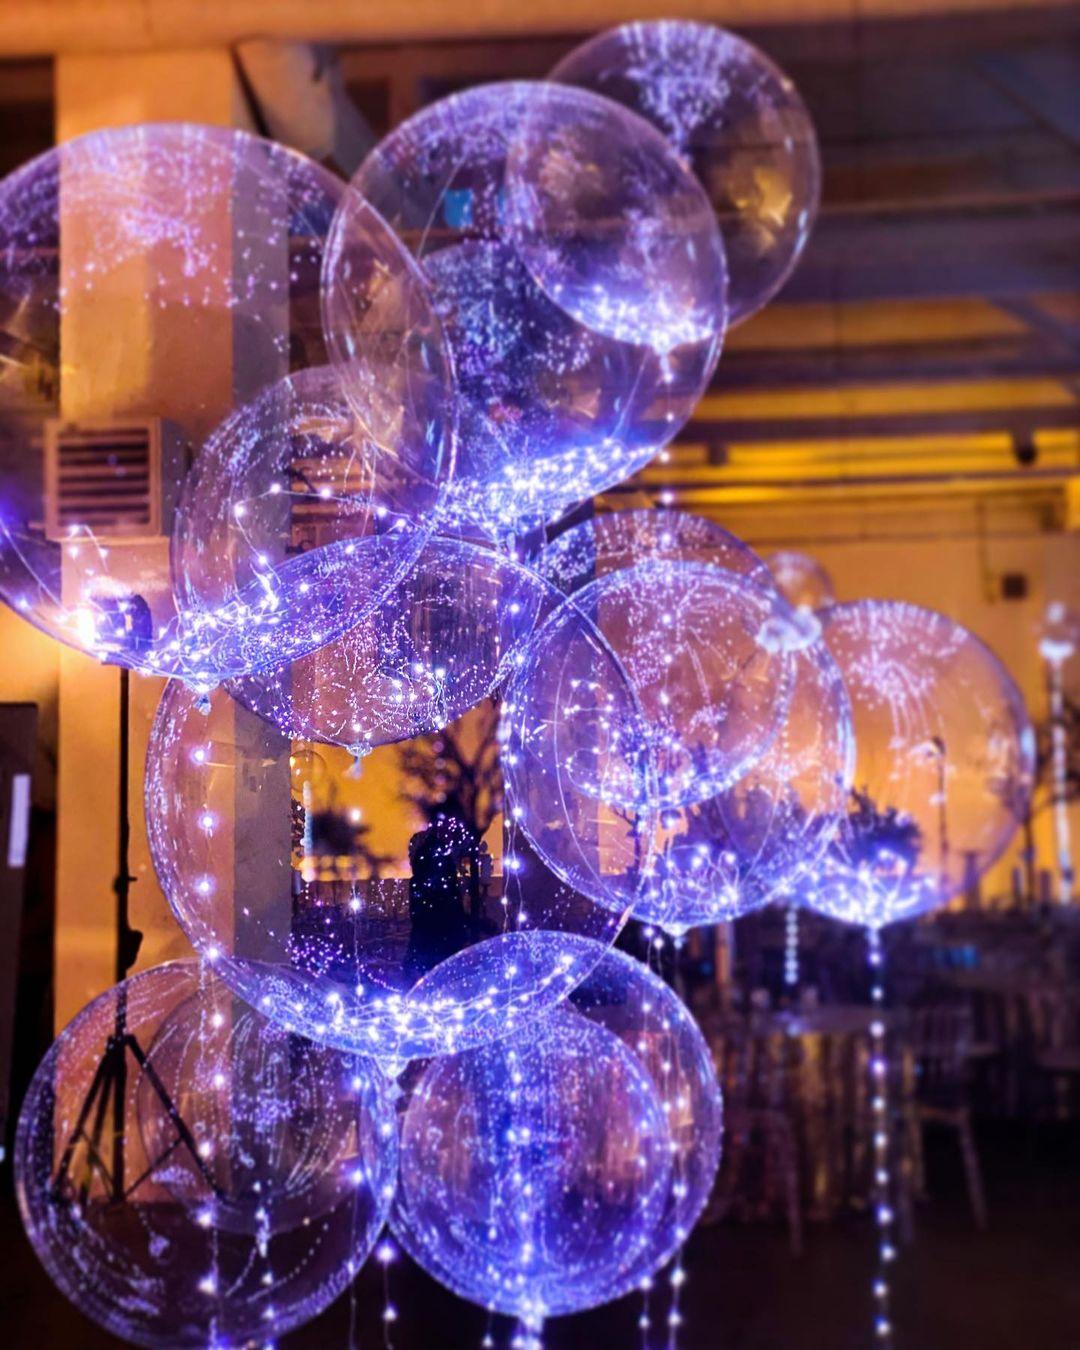 Shine with Festive Spirit: LED Bobo Balloons for Holiday Celebrations - Lasercutwraps Shop